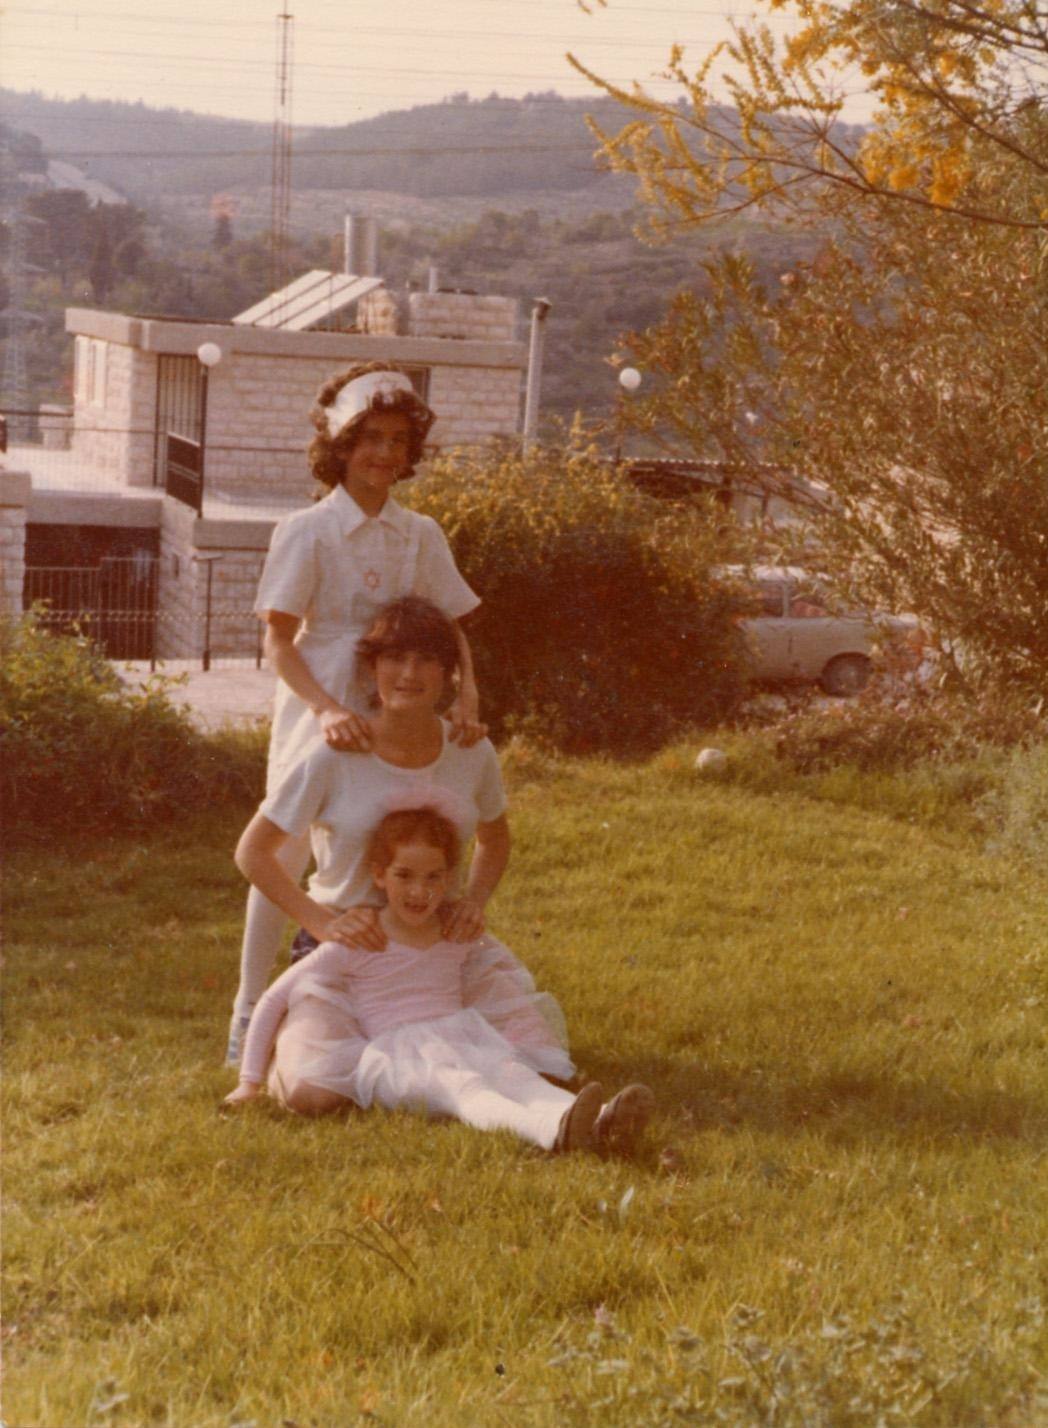 Esquerda: O fundador e CEO do MyHeritage, Gilad Japhet, usando uma peruca e um uniforme de enfermeira na Festa de Purim, com suas irmãs, em Jerusalém, 1978. Direita: após a restauração de cores, a foto parece ter sido tirada ontem.